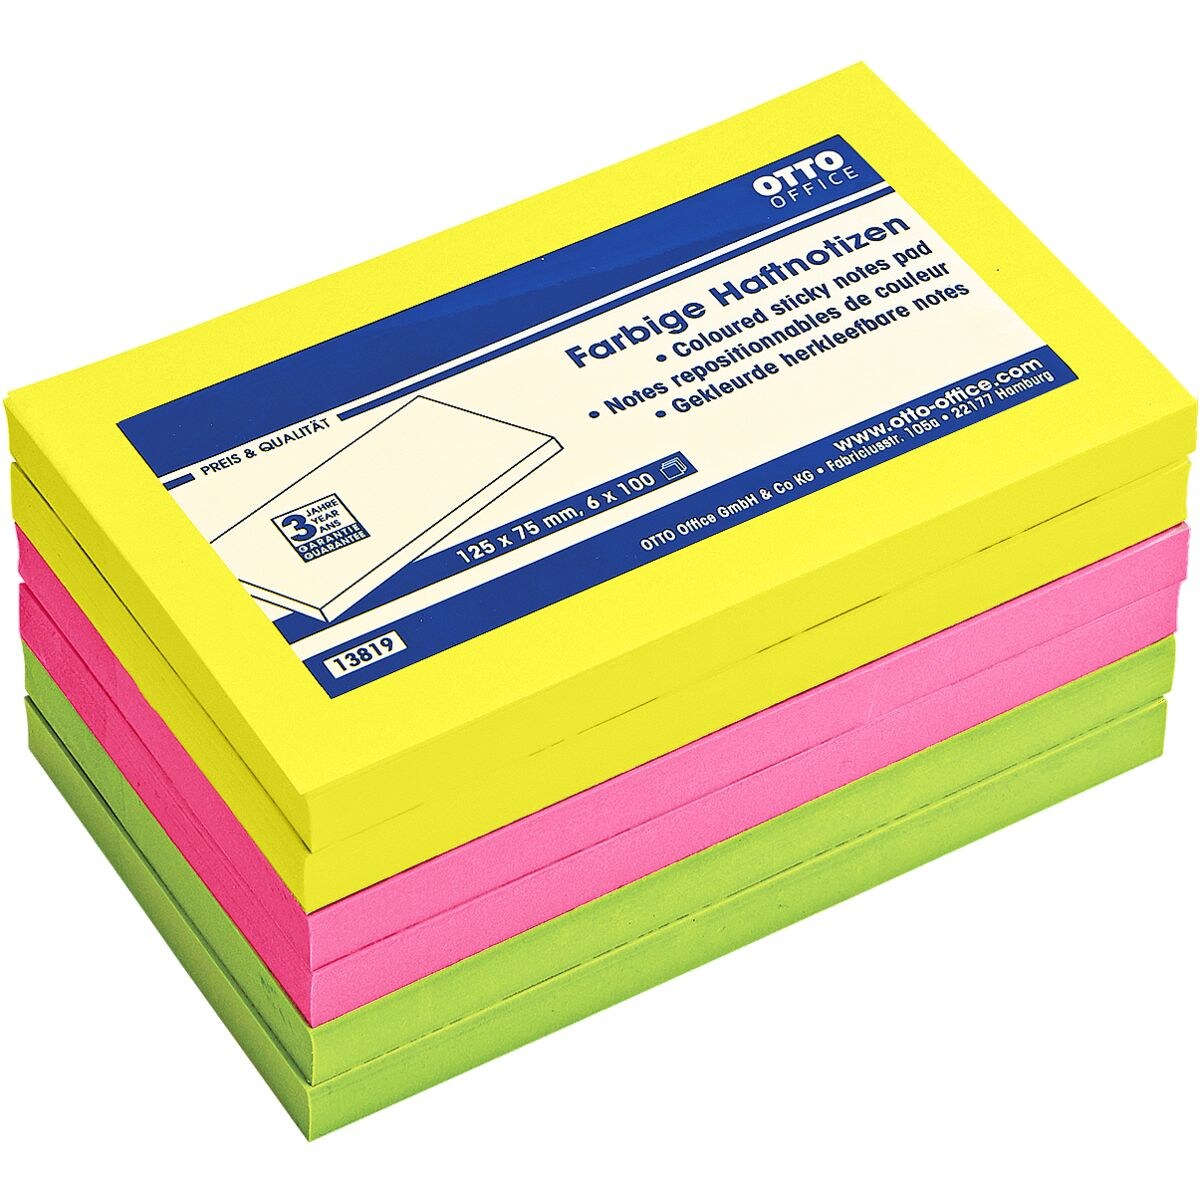 6x OTTO Office blok herkleefbare notes  12,5 x 7,5 cm, 600 bladen (totaal), gesorteerd in kleuren